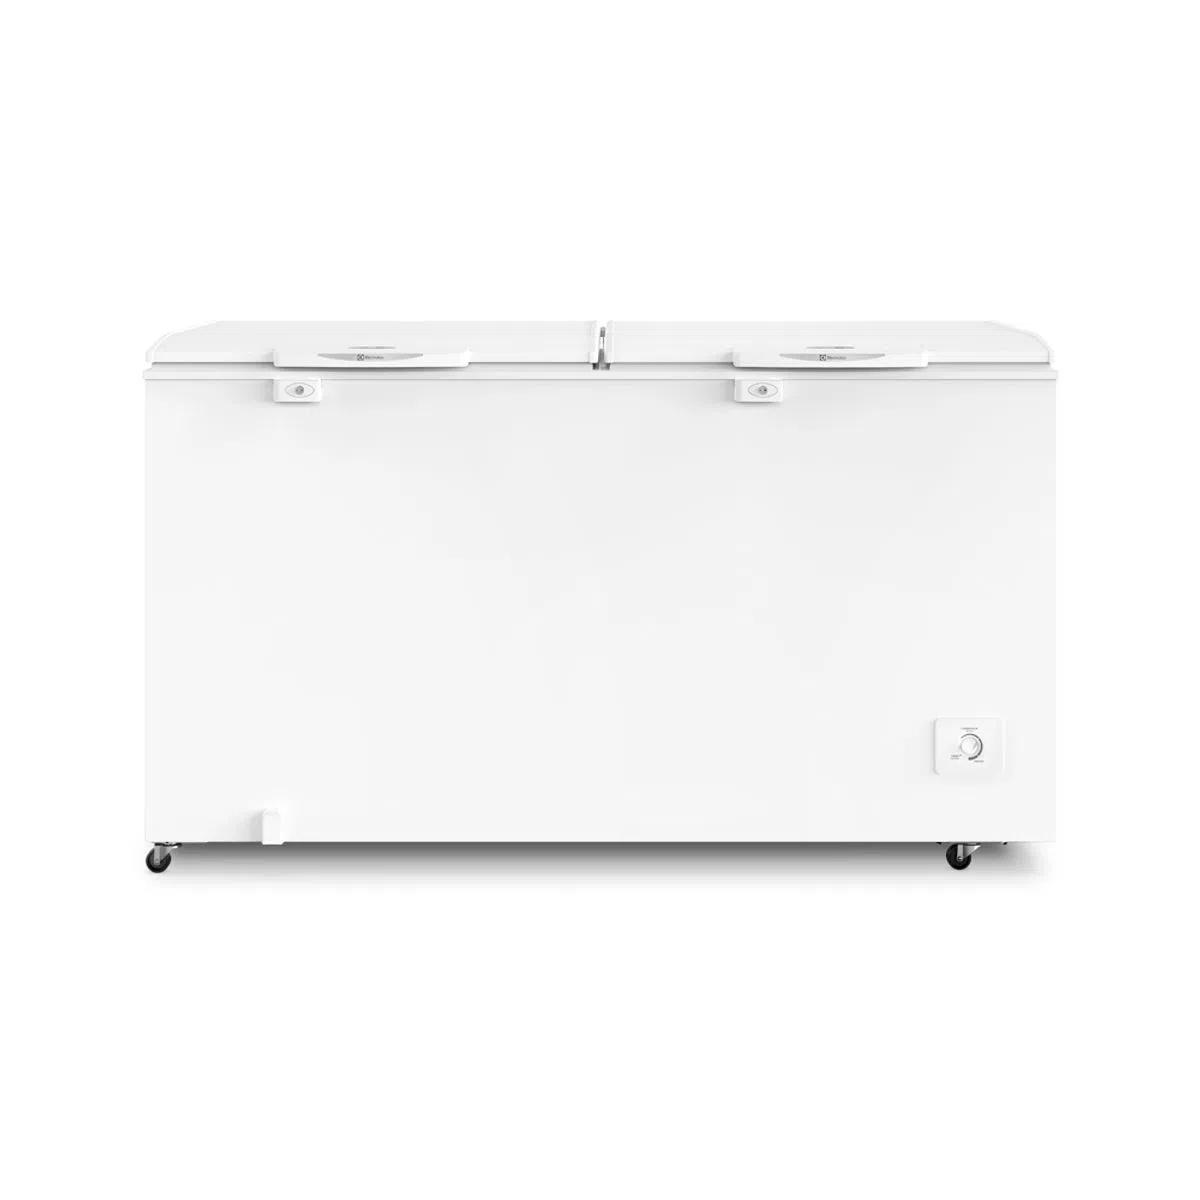 freezer-horizontal-electrolux-cycle-defrost-513l-com-funcao-turbo-freezer-duas-portas-h550 - Imagem